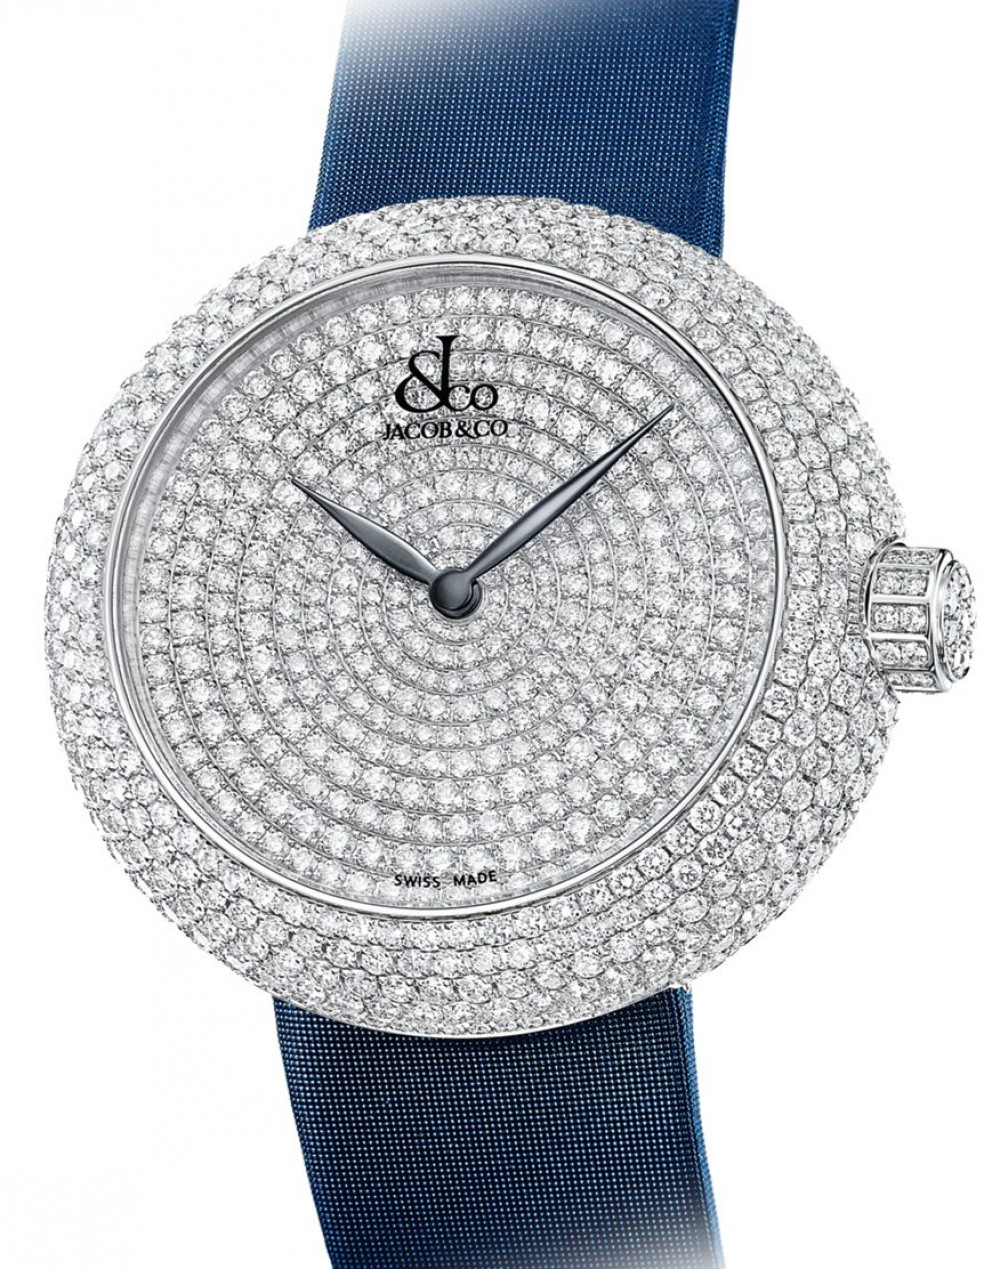 Zegarek firmy Jacob & Co, model Brilliant Diamond Lady